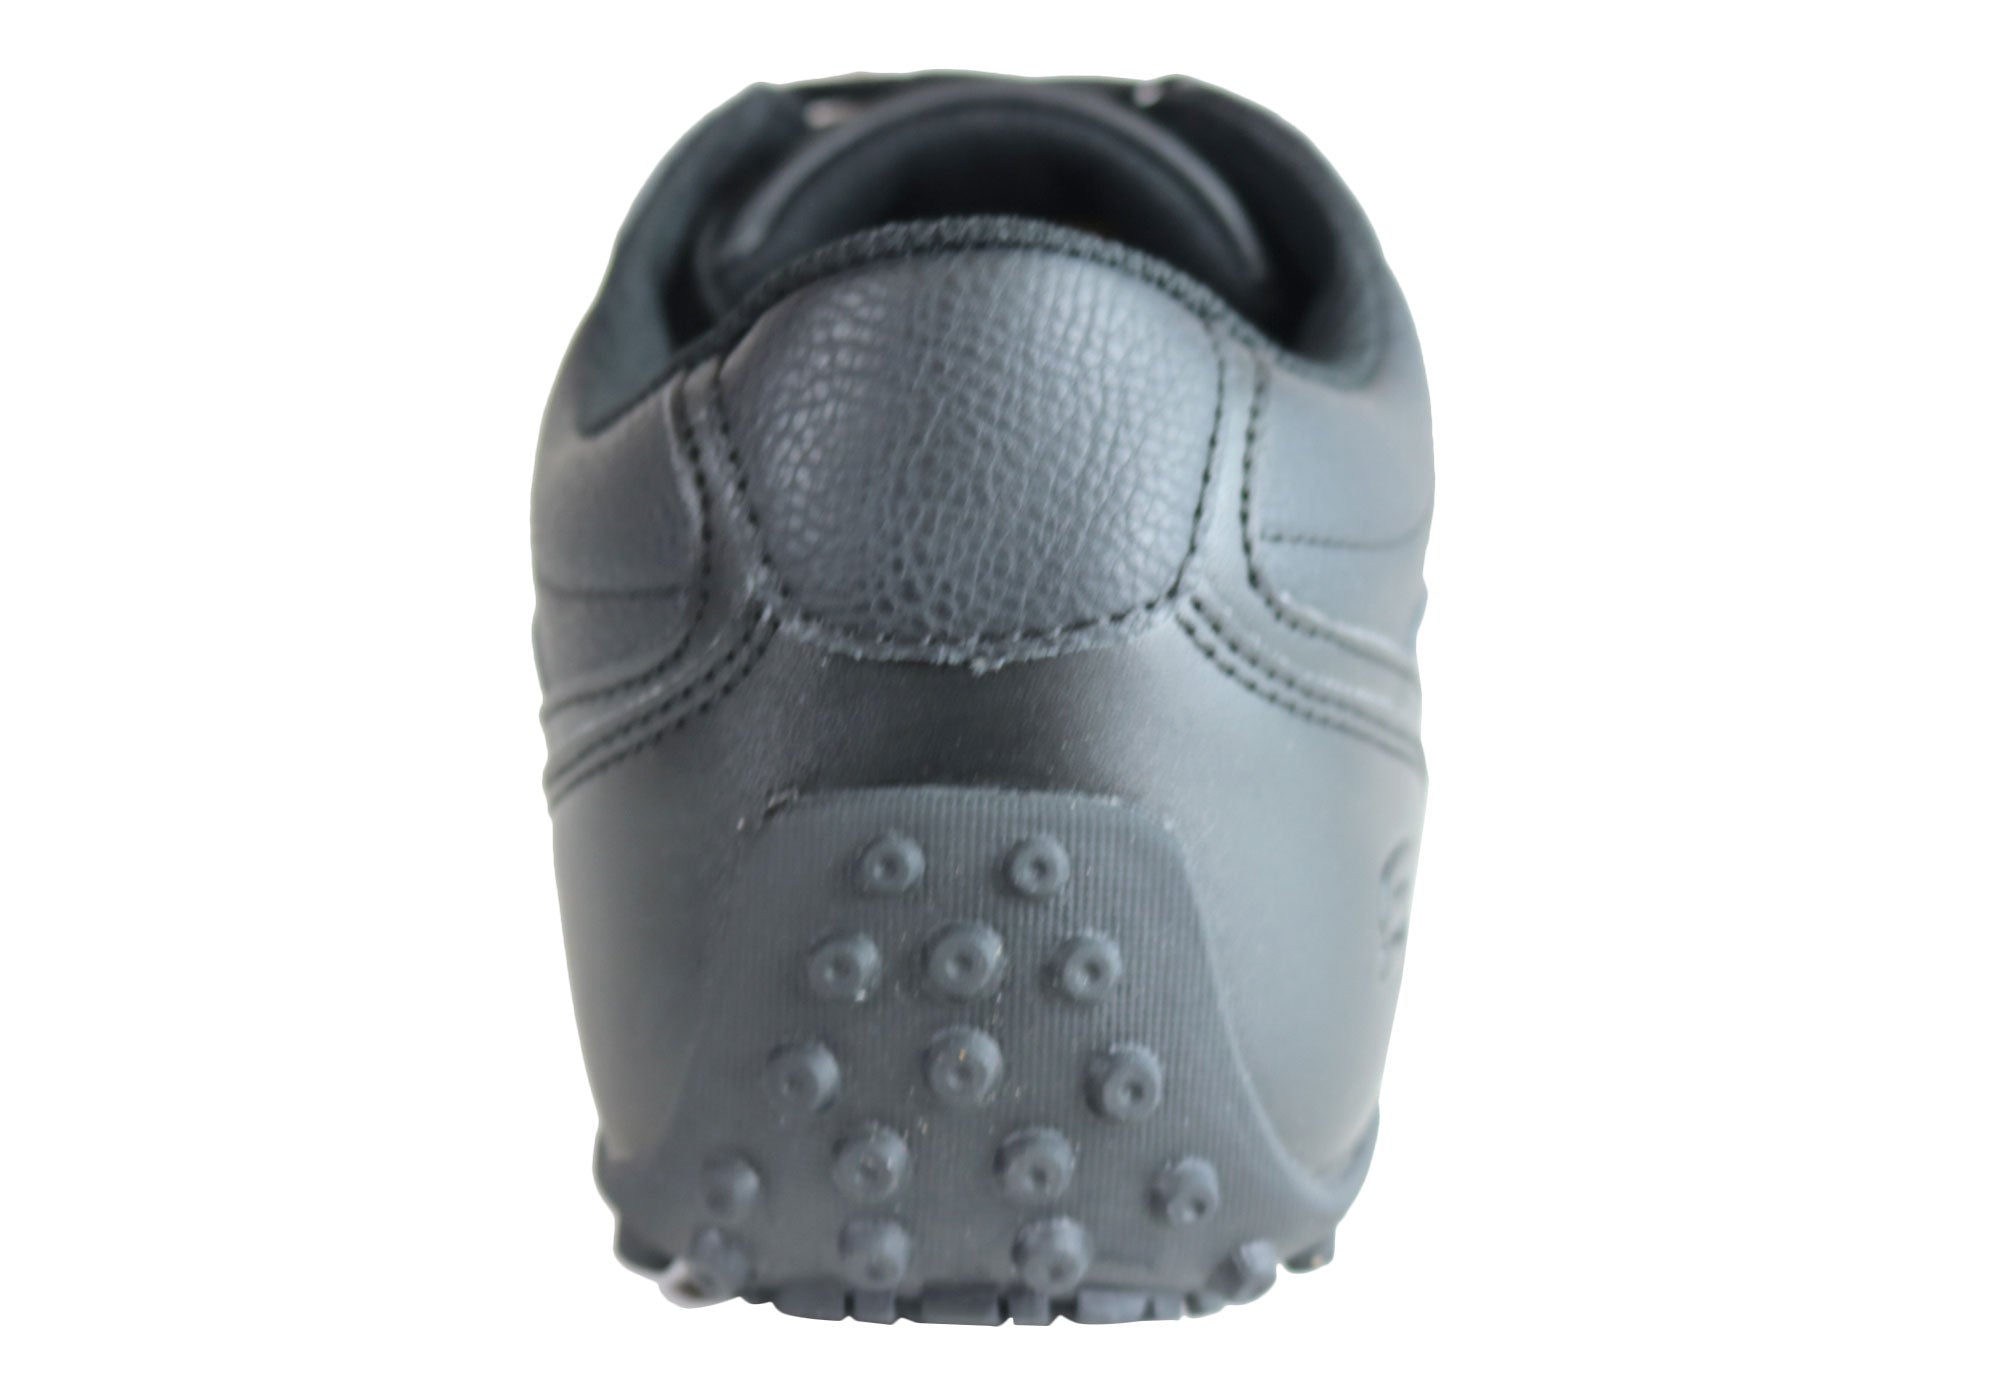 men's skechers slip resistant work shoes